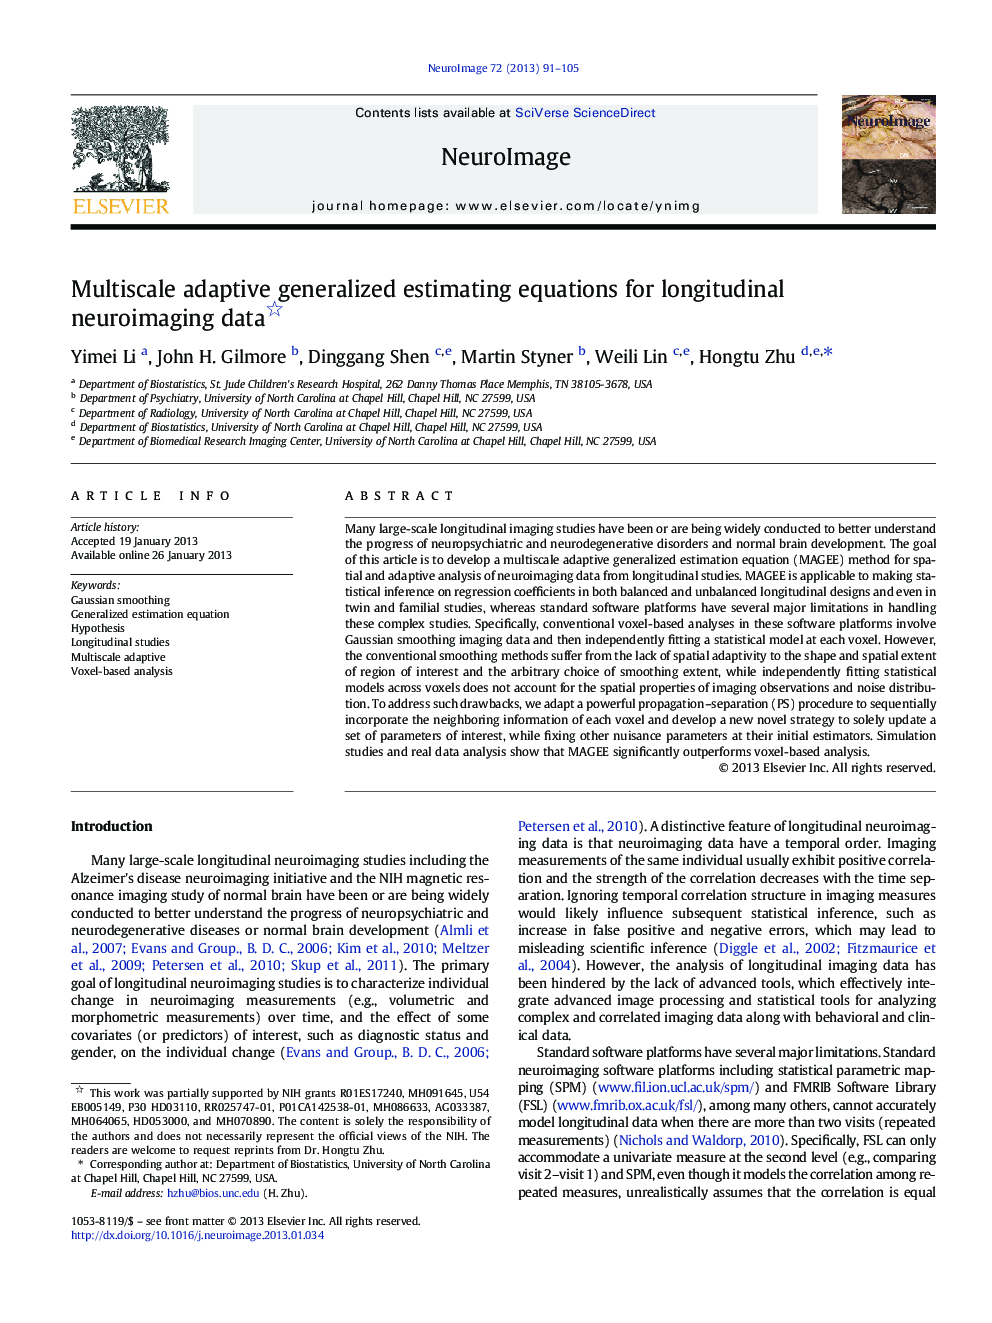 Multiscale adaptive generalized estimating equations for longitudinal neuroimaging data